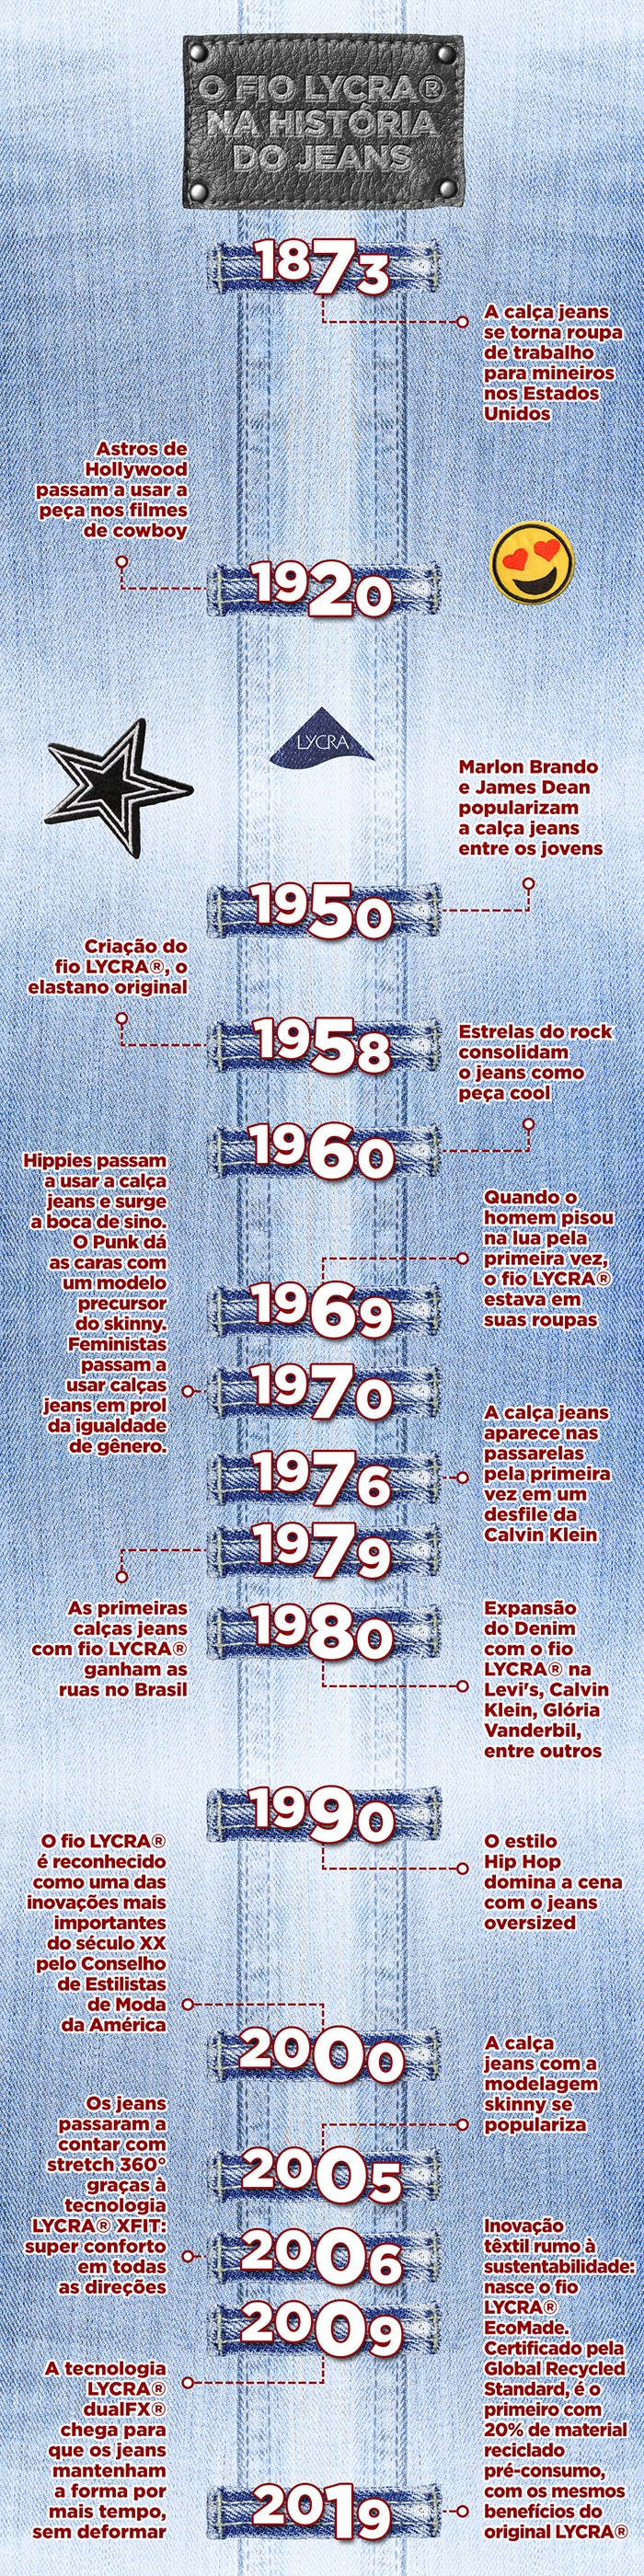 O fio LYCRA na história do jeans (Foto: Divulgação)